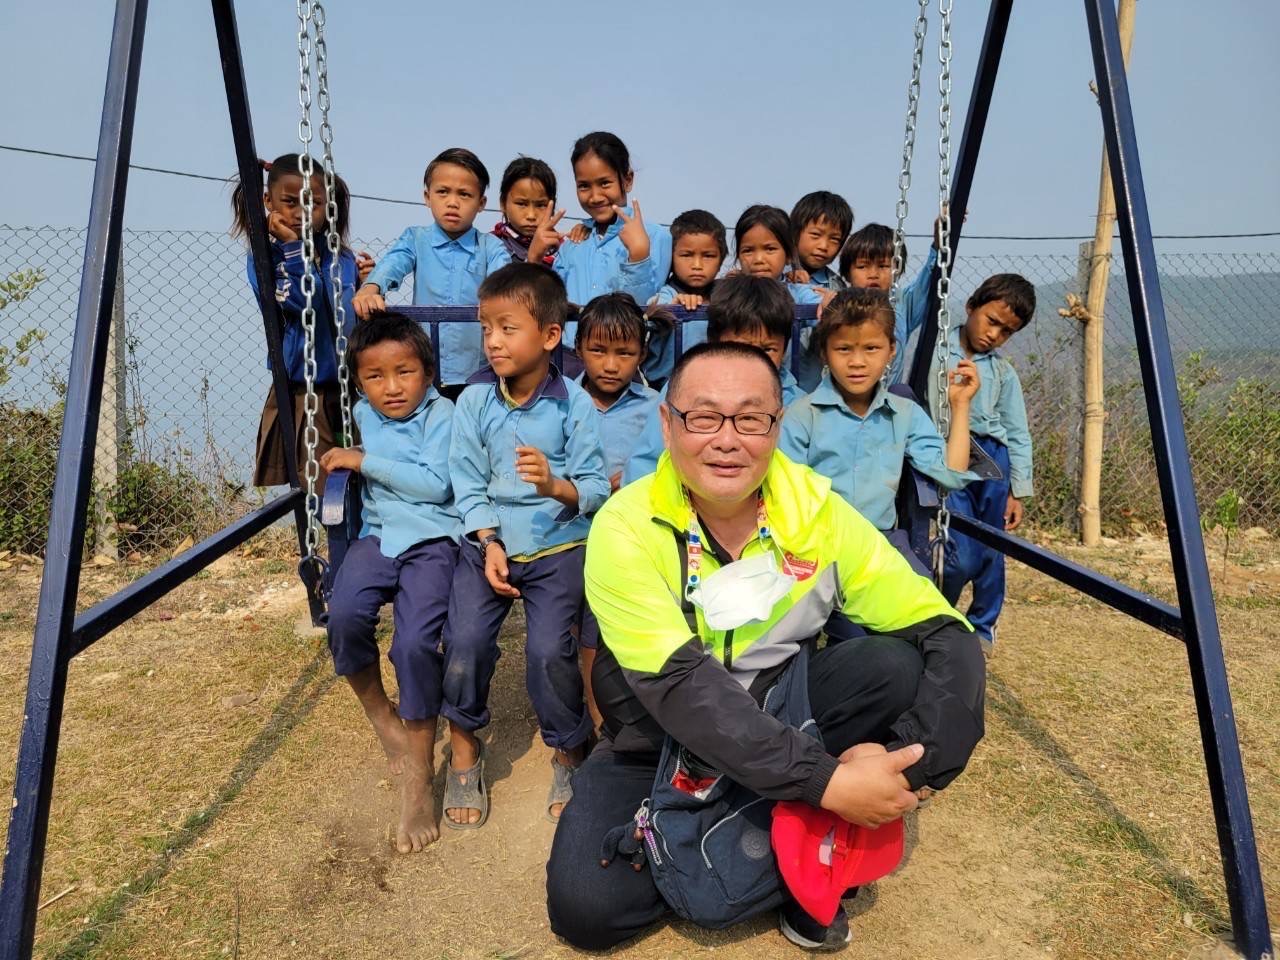 美好的志工歲月  歡迎您一起加入傳愛到尼泊爾行列